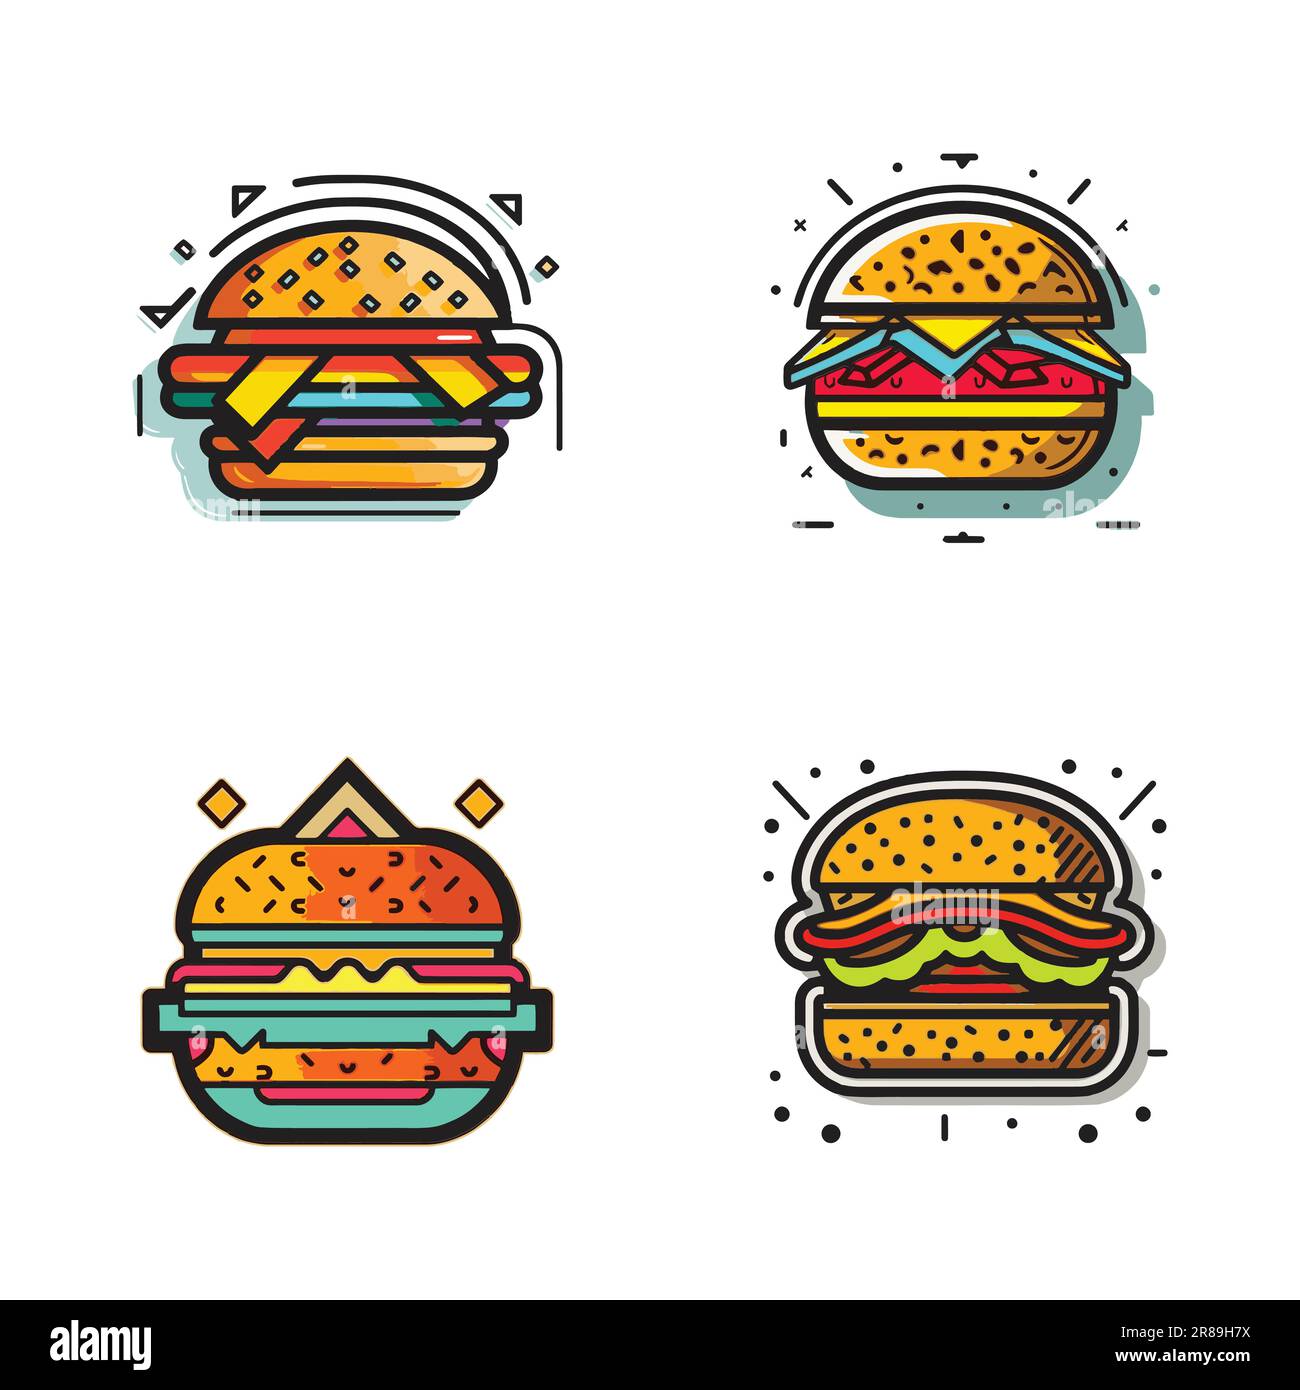 Handgezeichnetes Vintage-Hamburger-Logo im flachen Kunststil, isoliert auf dem Hintergrund Stock Vektor